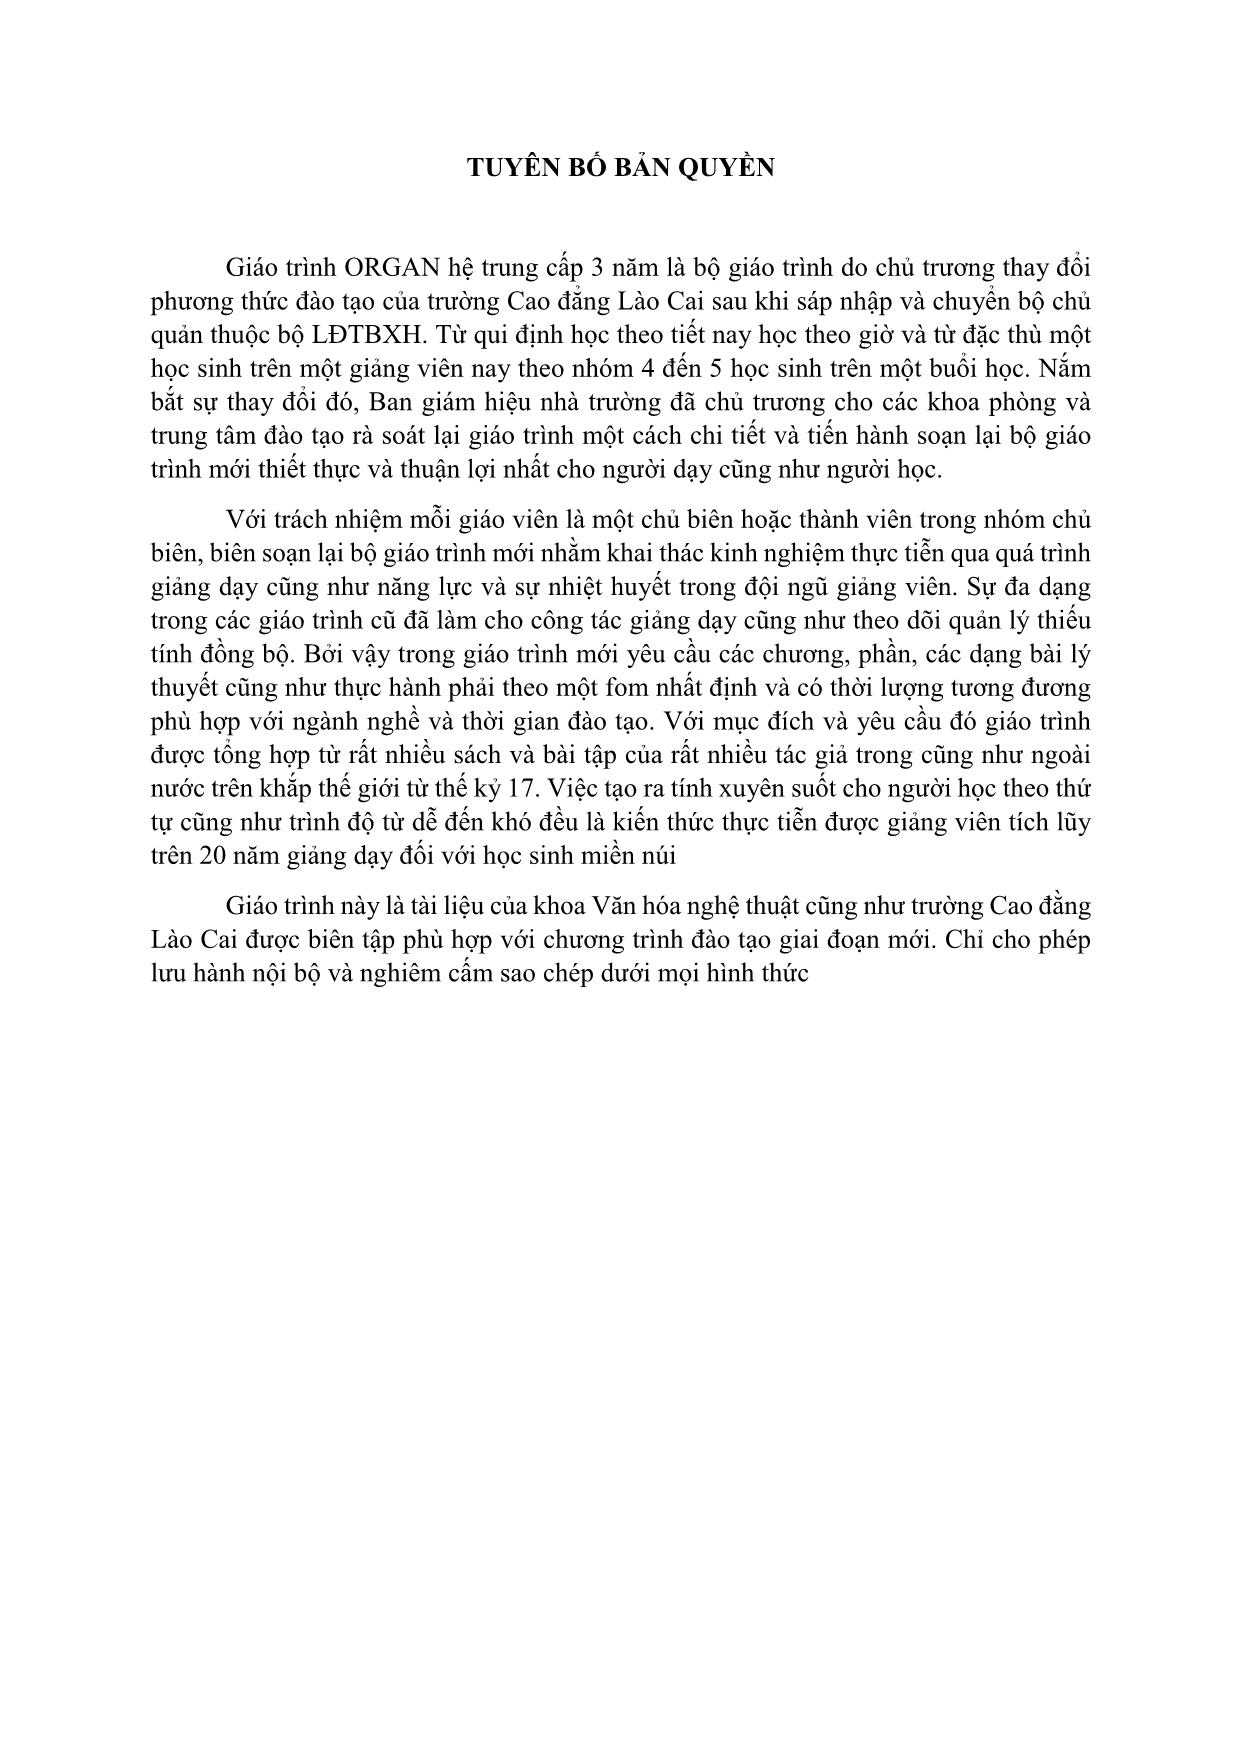 Giáo trình Organ (Quyển 2) trang 2